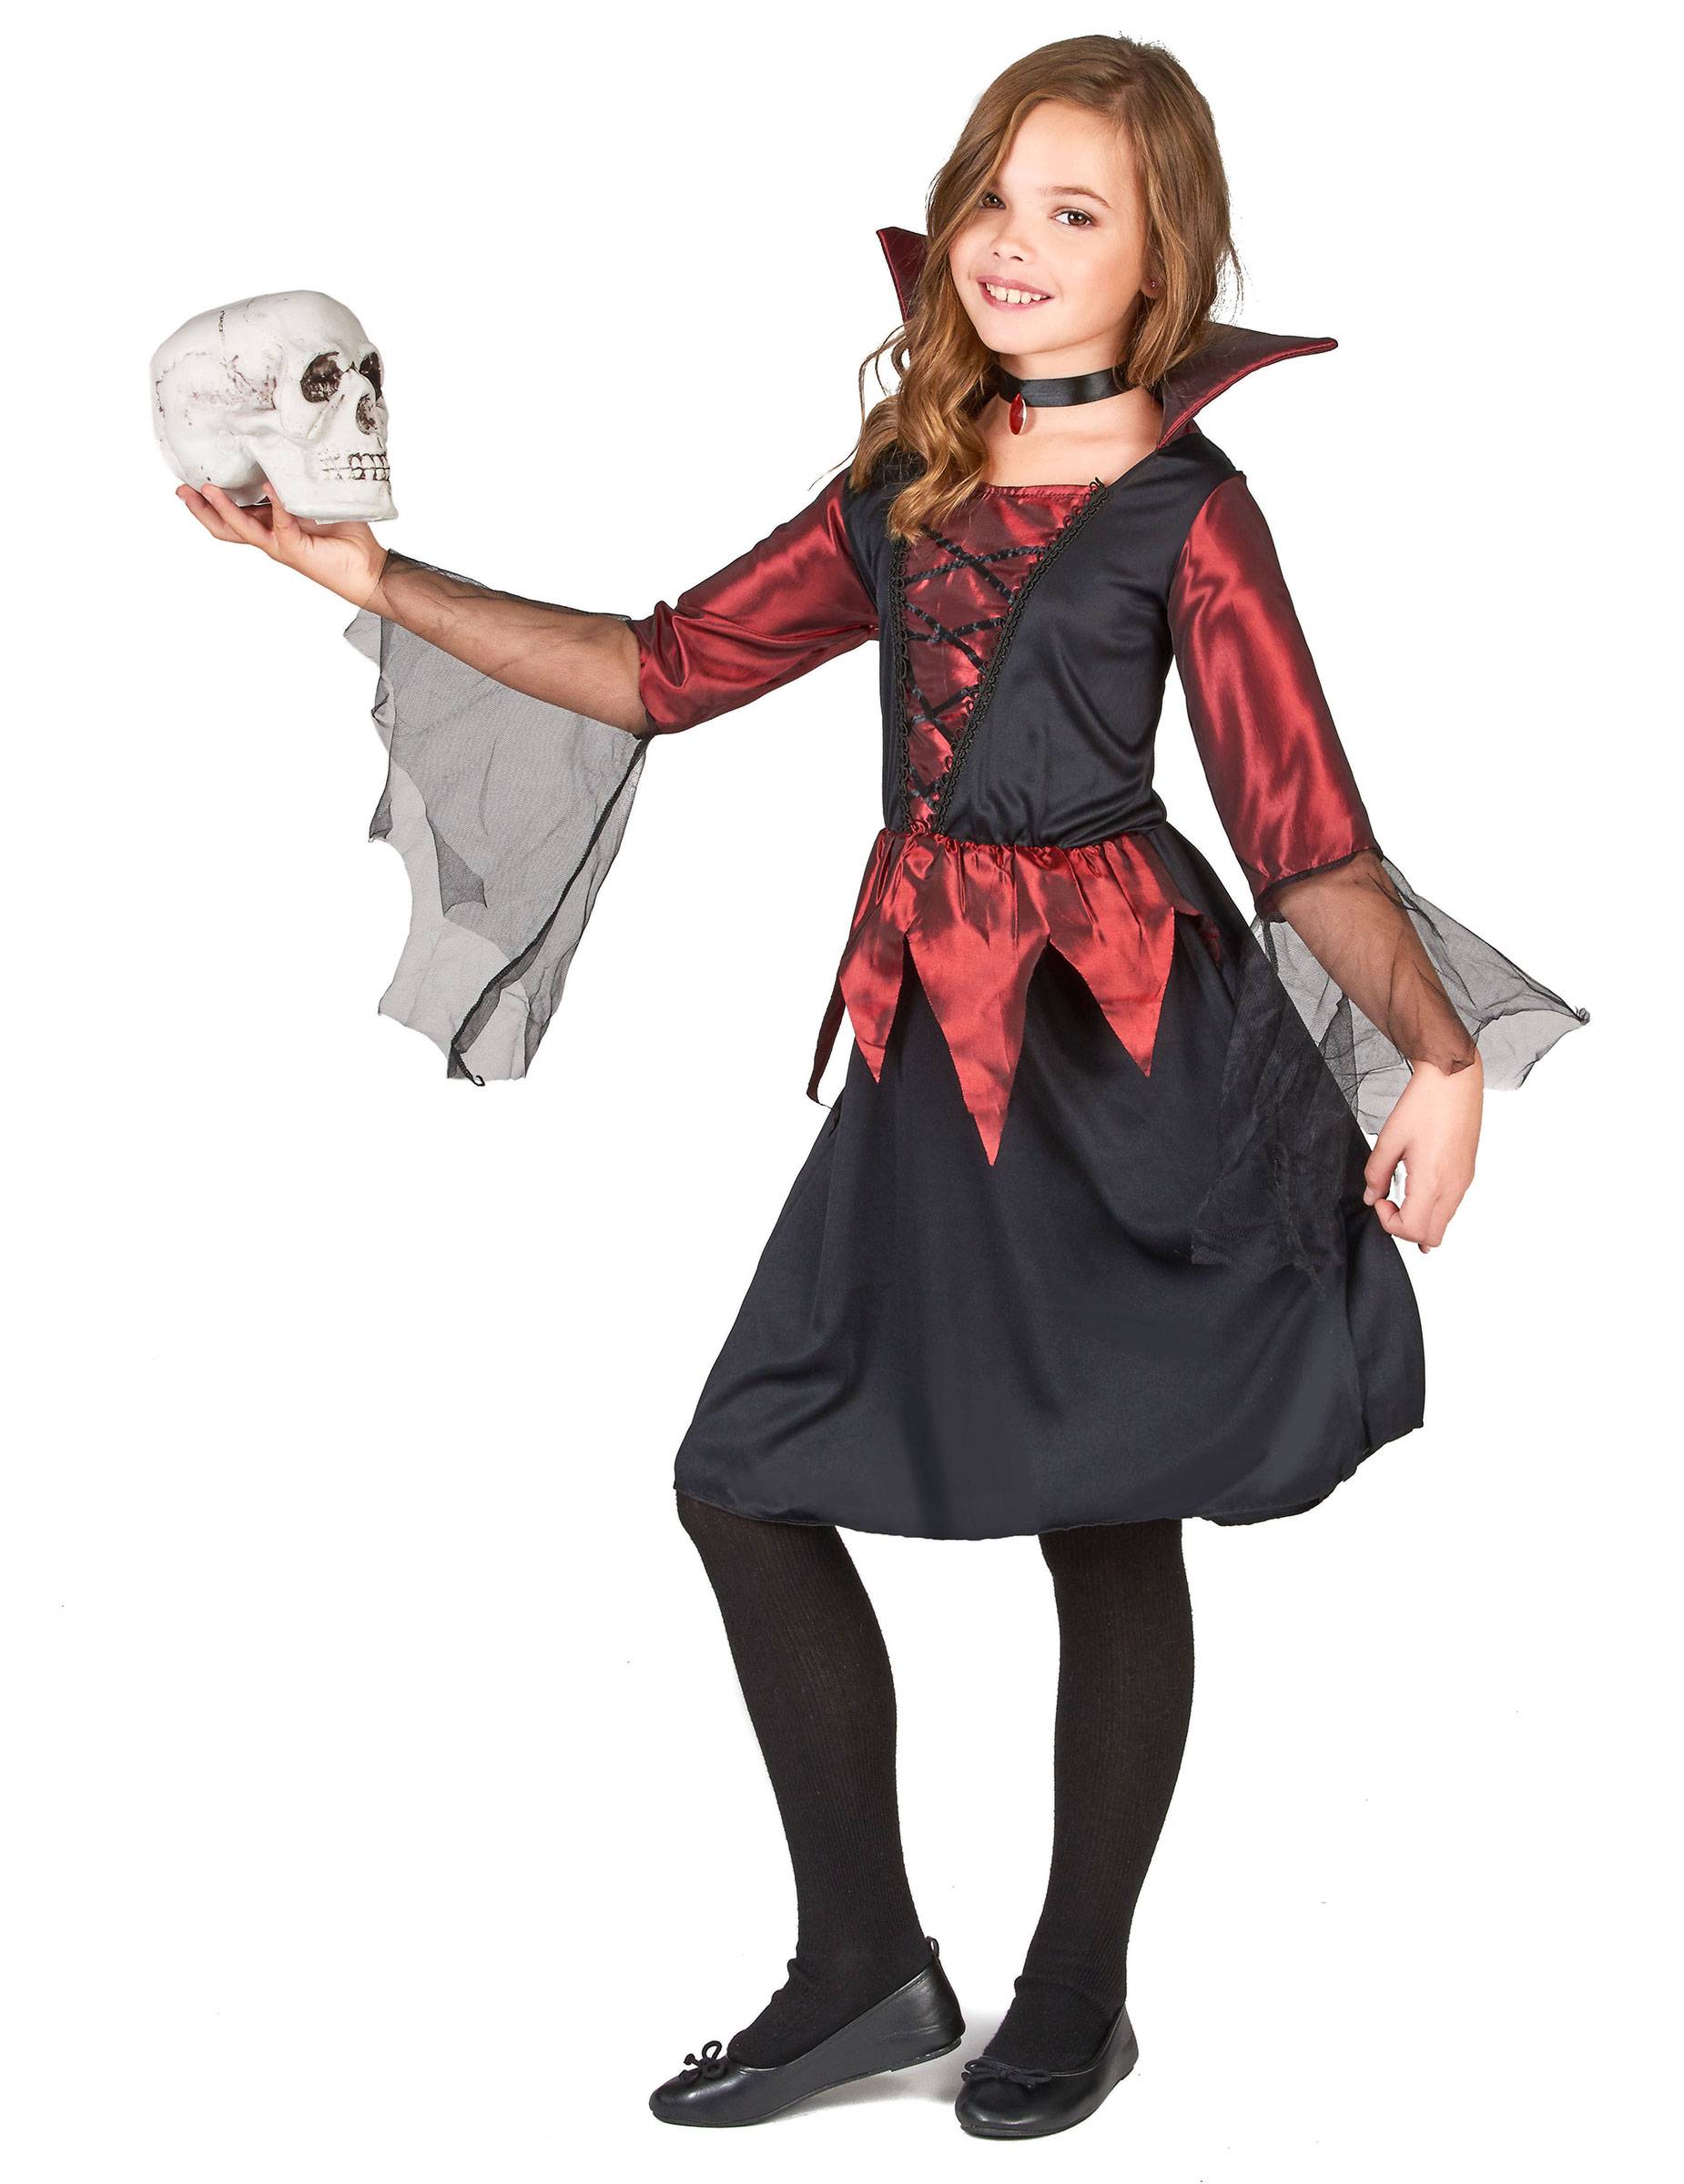 Костюм на хэллоуин для парня и мальчика 8-12 лет: быстро своими руками в домашних условиях: зомби, пират, скелет (фото)